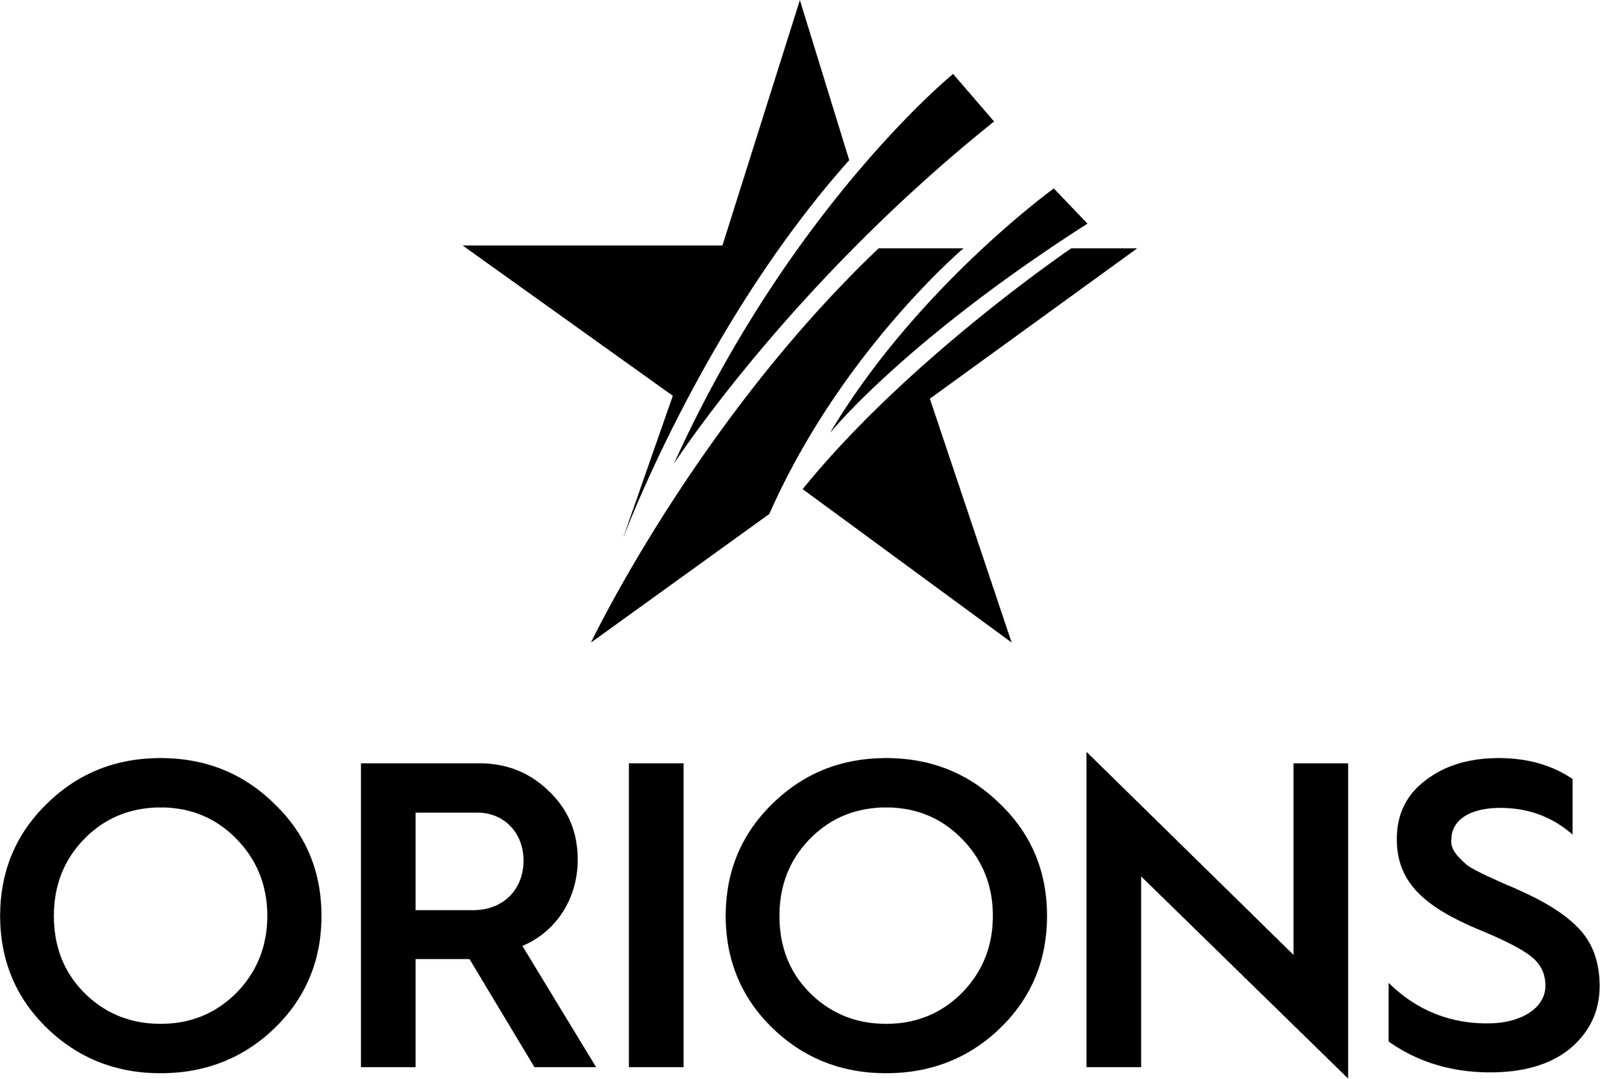 Bilde av logoen til accessories merkevaren Orions Fashion, som er ekspert på motetilbehør i Norge. Logoen er fullstendig med teksten og stjerne-symbolet på hvit bakgrunn.